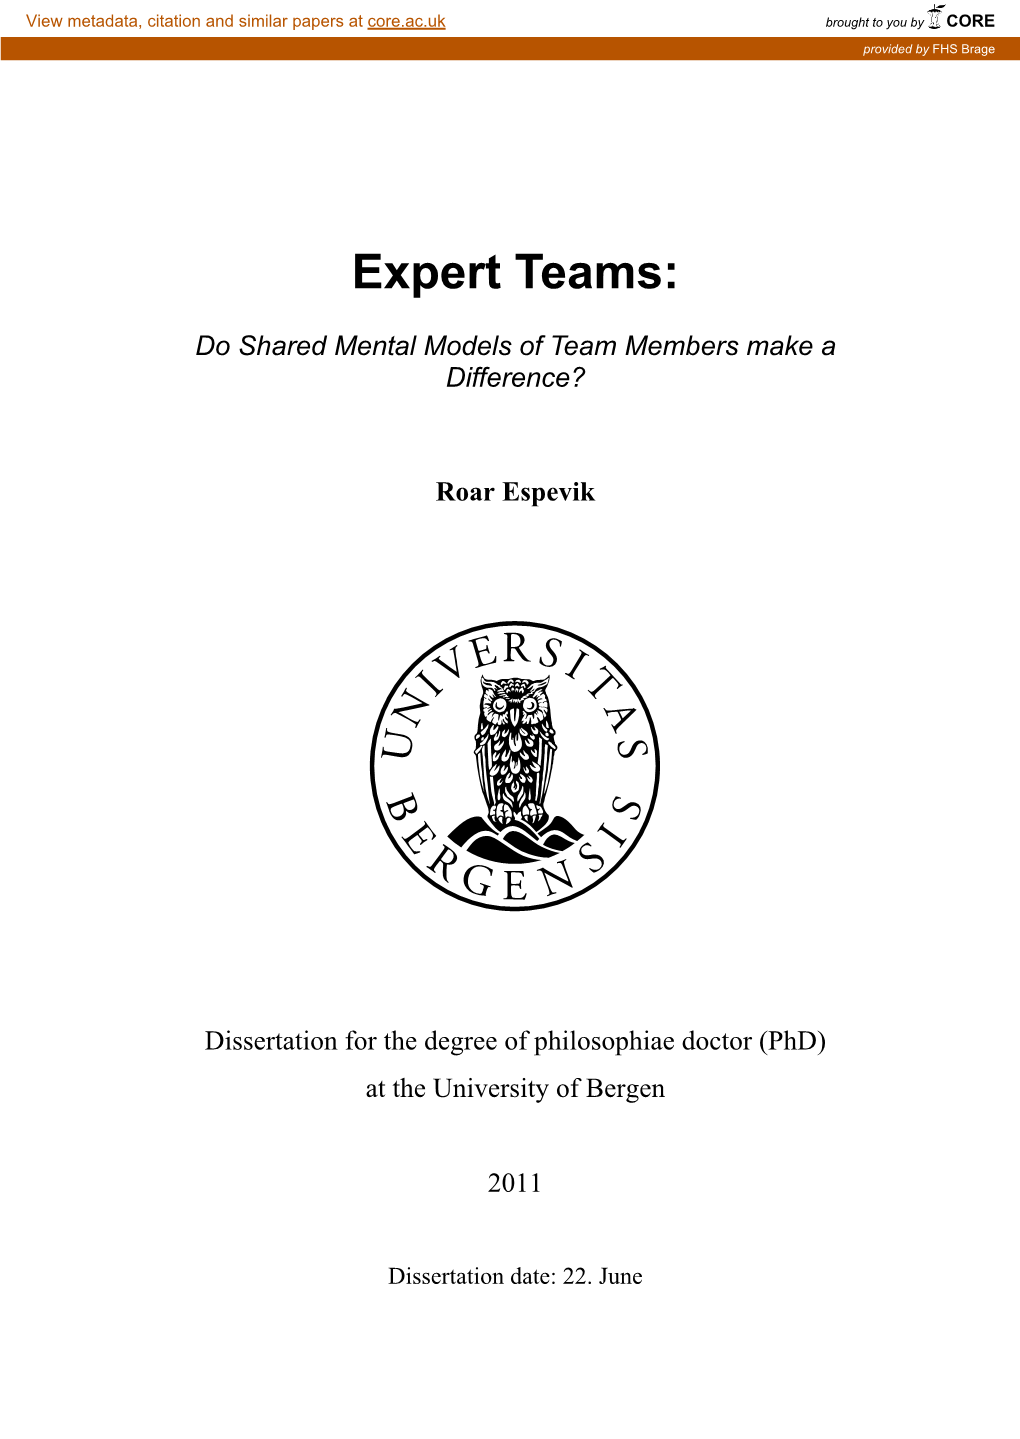 Expert Teams